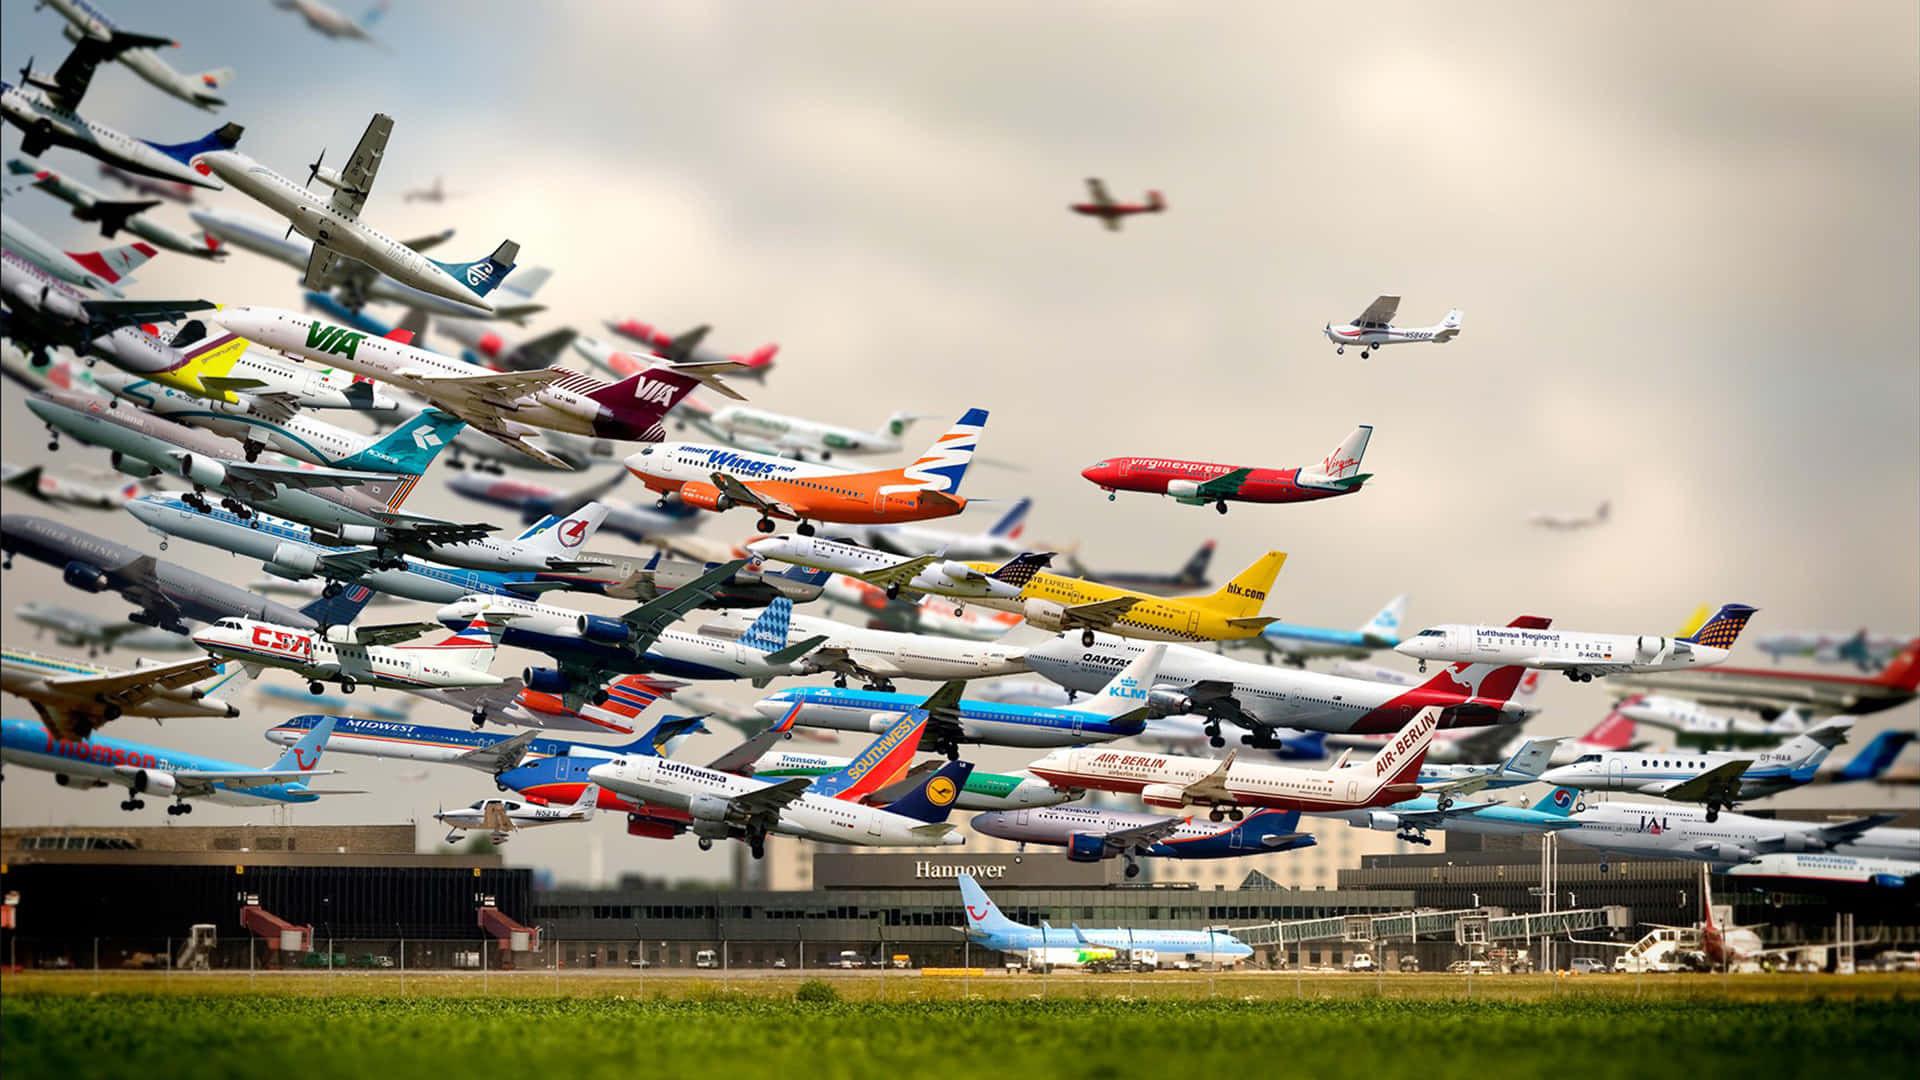 Vieleflugzeuge Fliegen Am Himmel.